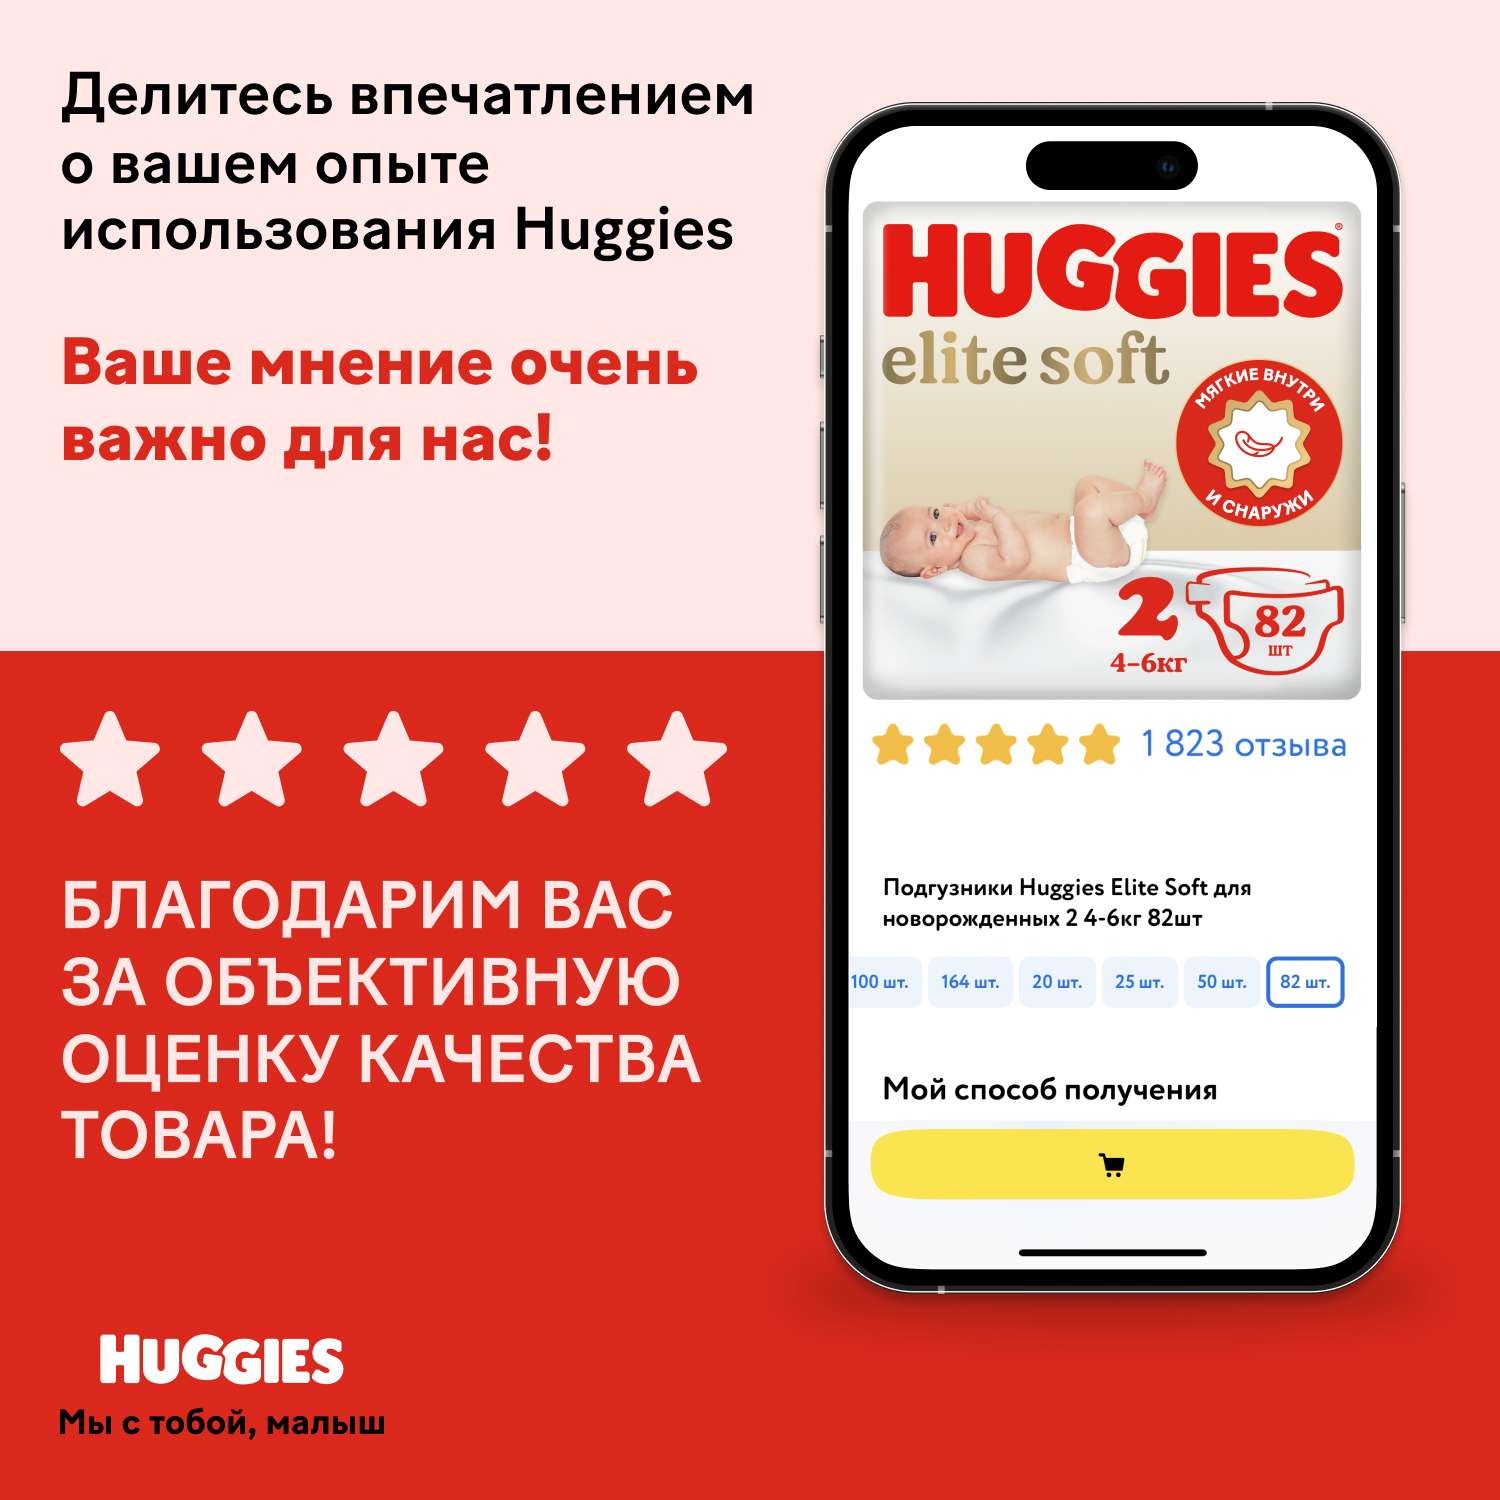 Подгузники Huggies Elite Soft для новорожденных 2 4-6кг 50шт - фото 19